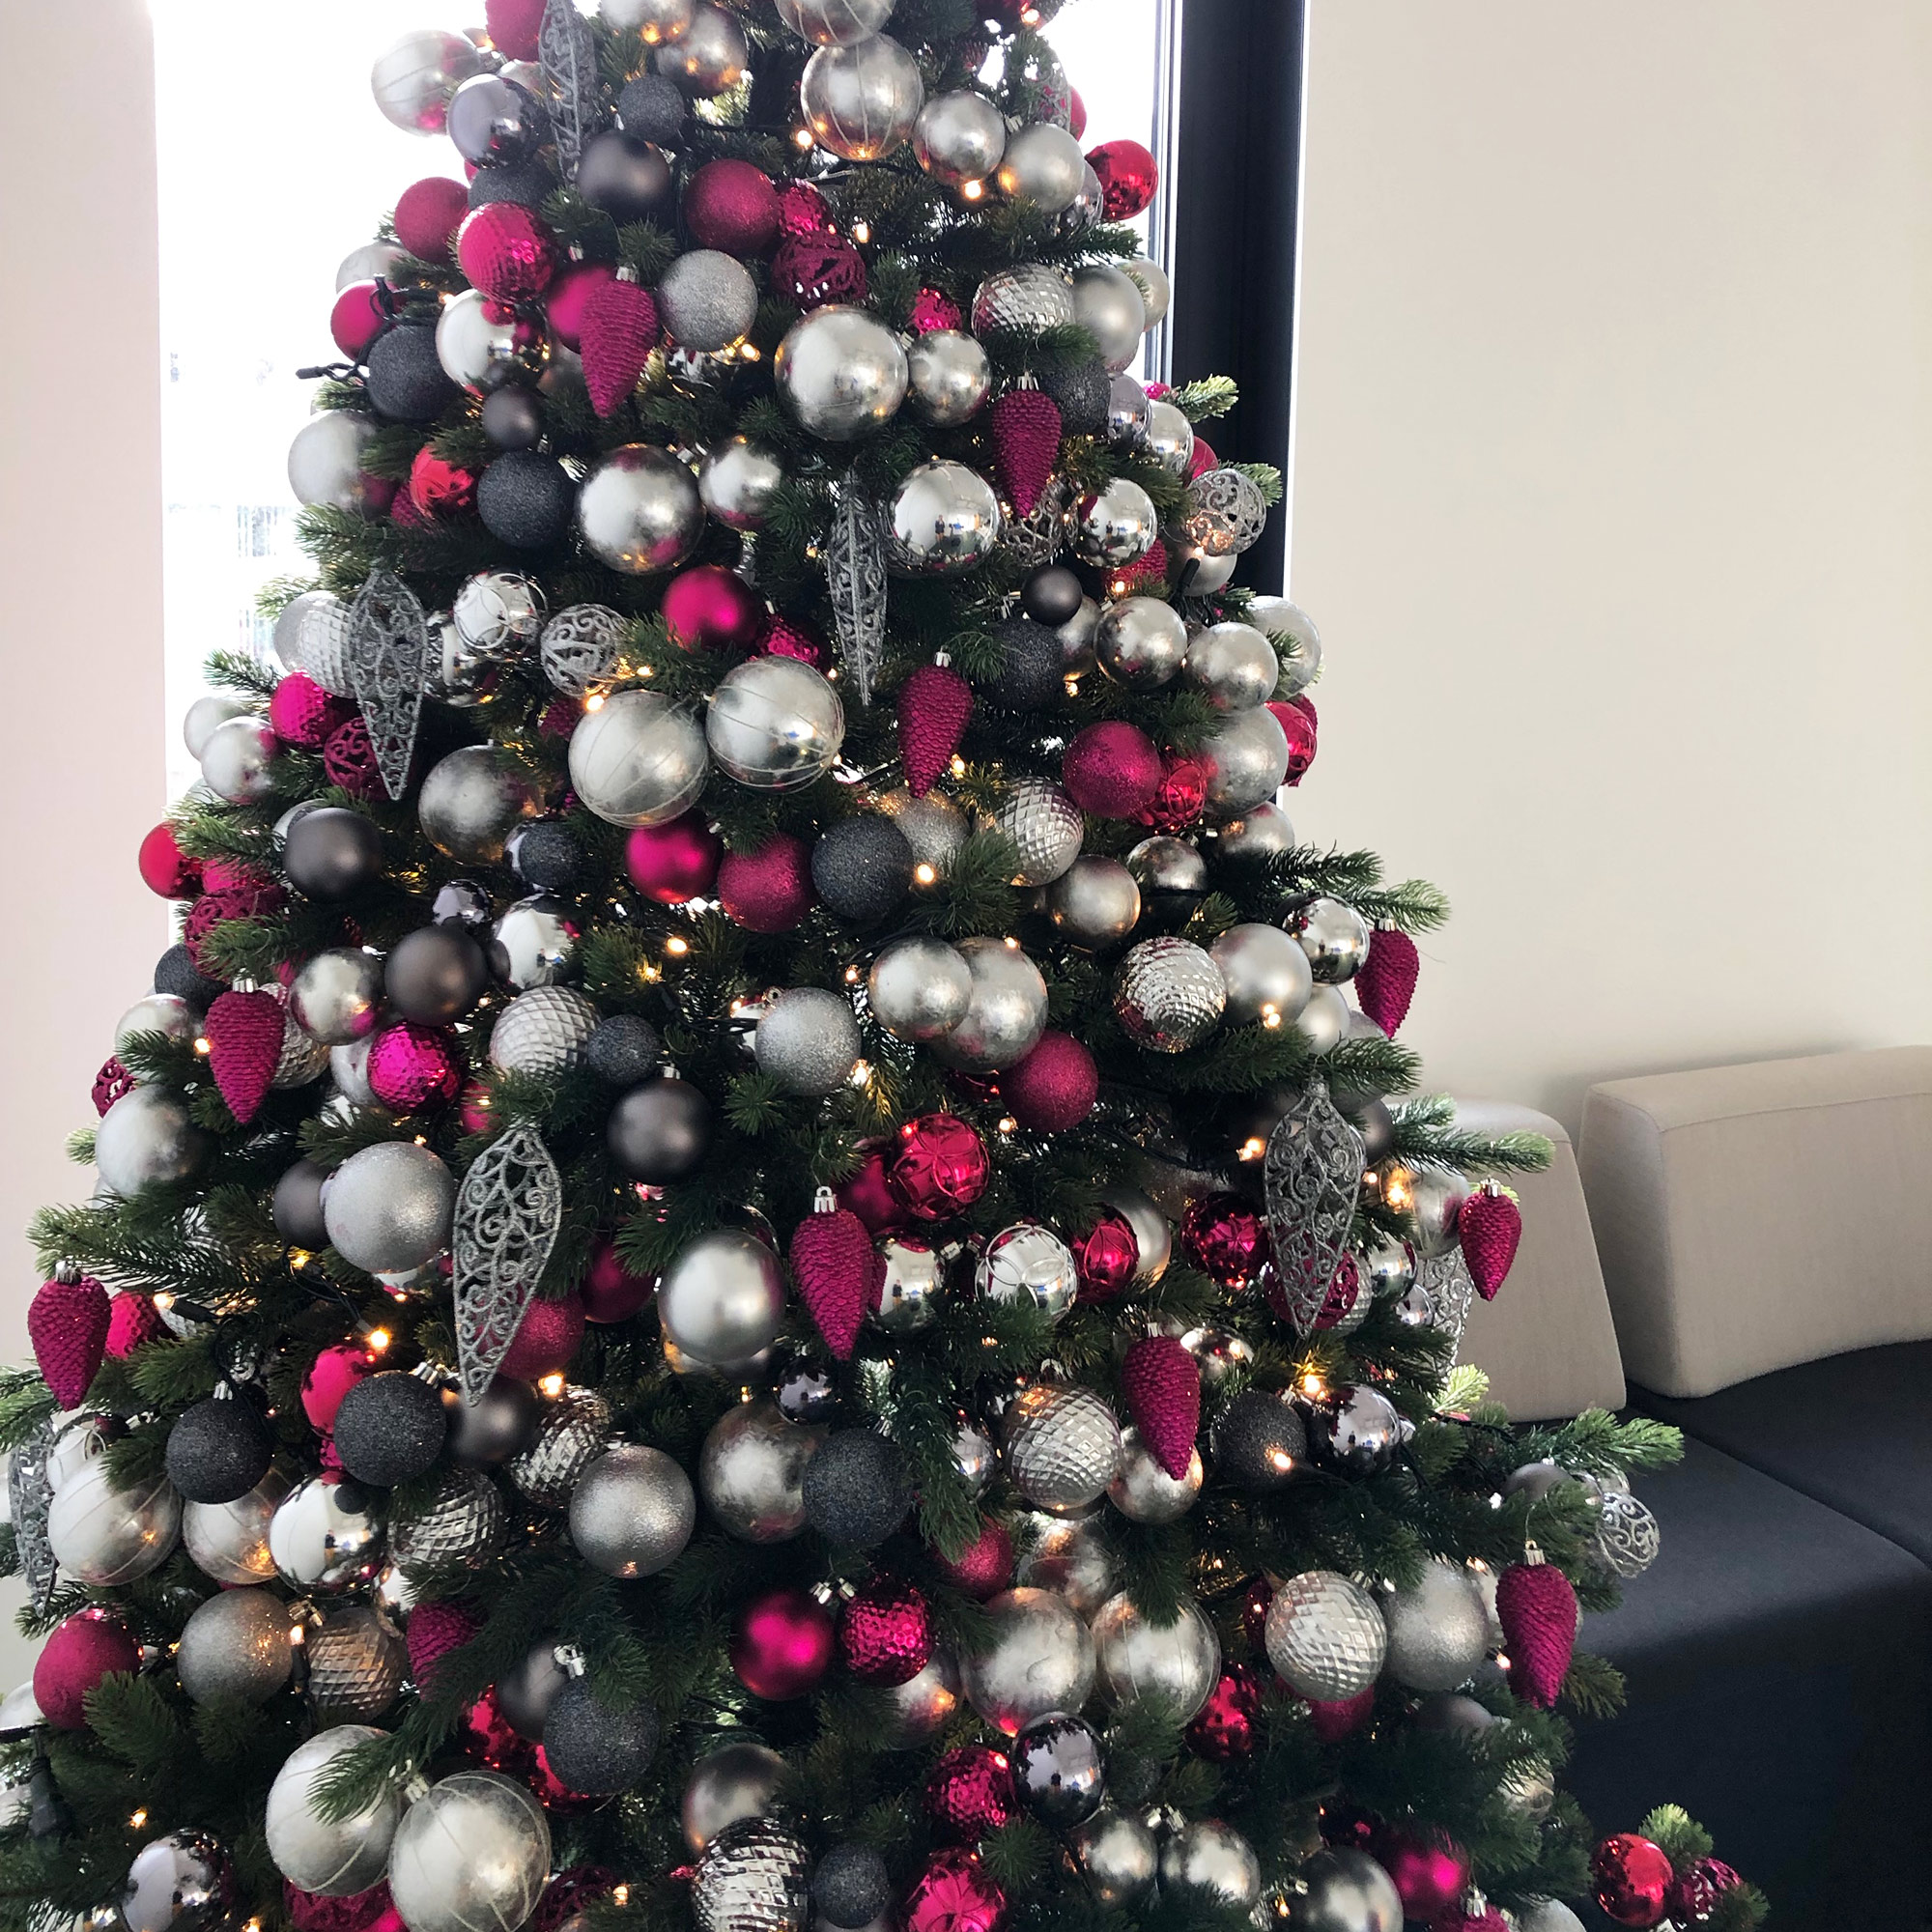 Weihnachtsbaum zur Miete in Pink und Silber gestaltet und dekoriert von ART DEKO Wien